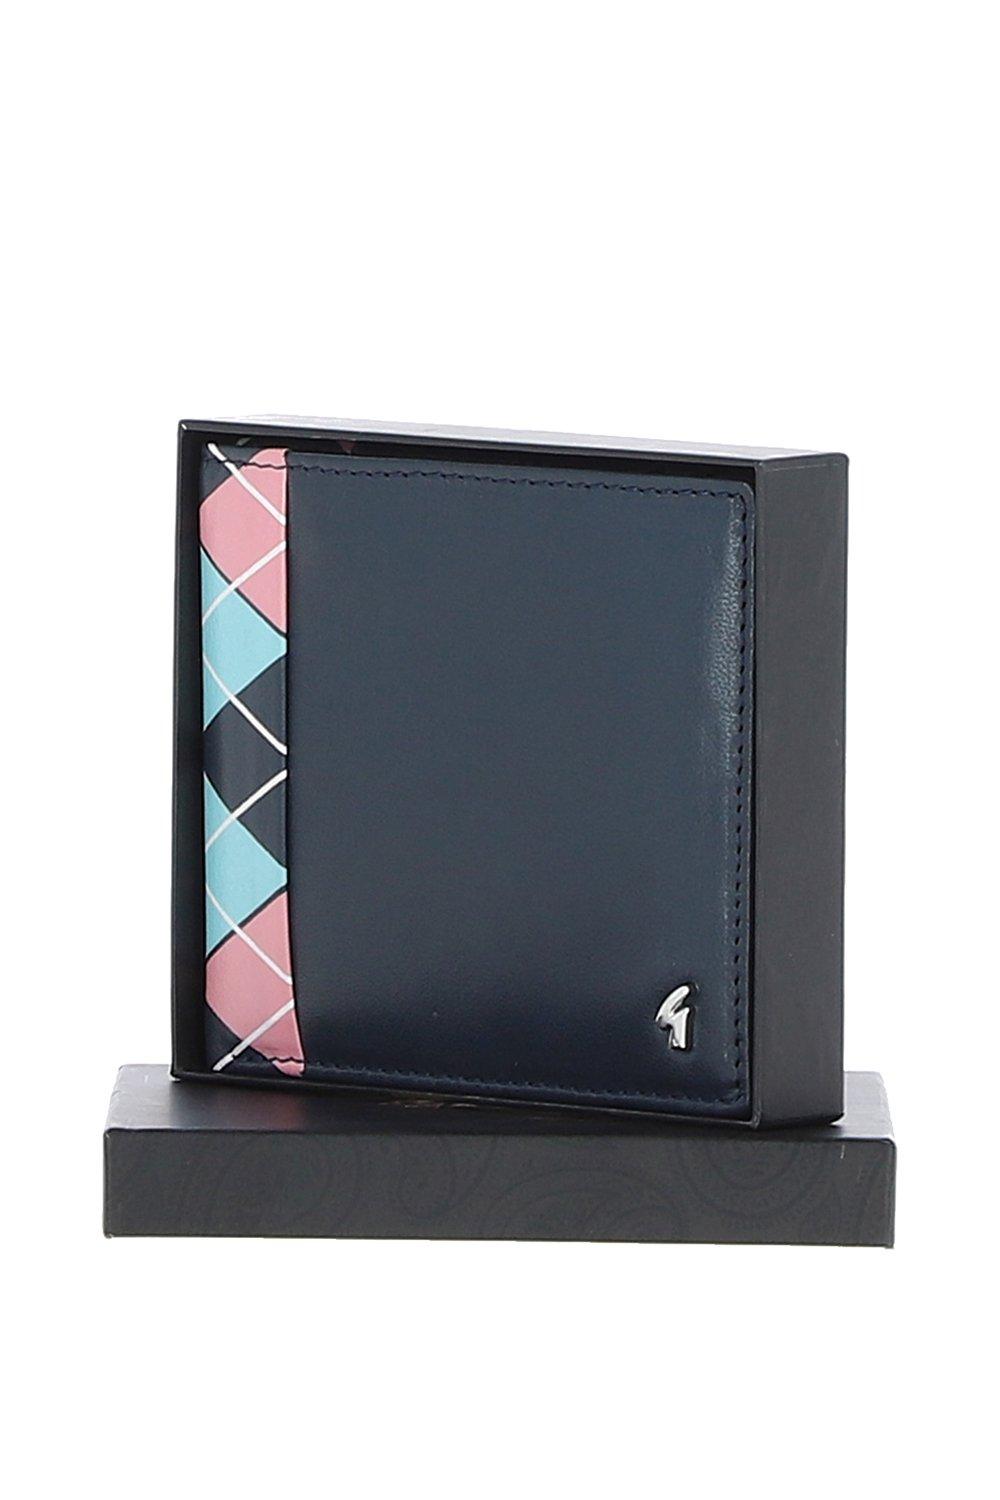 Классический кошелек на 8 карт из натуральной кожи GABICCI, темно-синий мужской клатч кошелек из натуральной кожи длинный бумажник для сотового телефона простая многофункциональная деловая сумка на молнии из